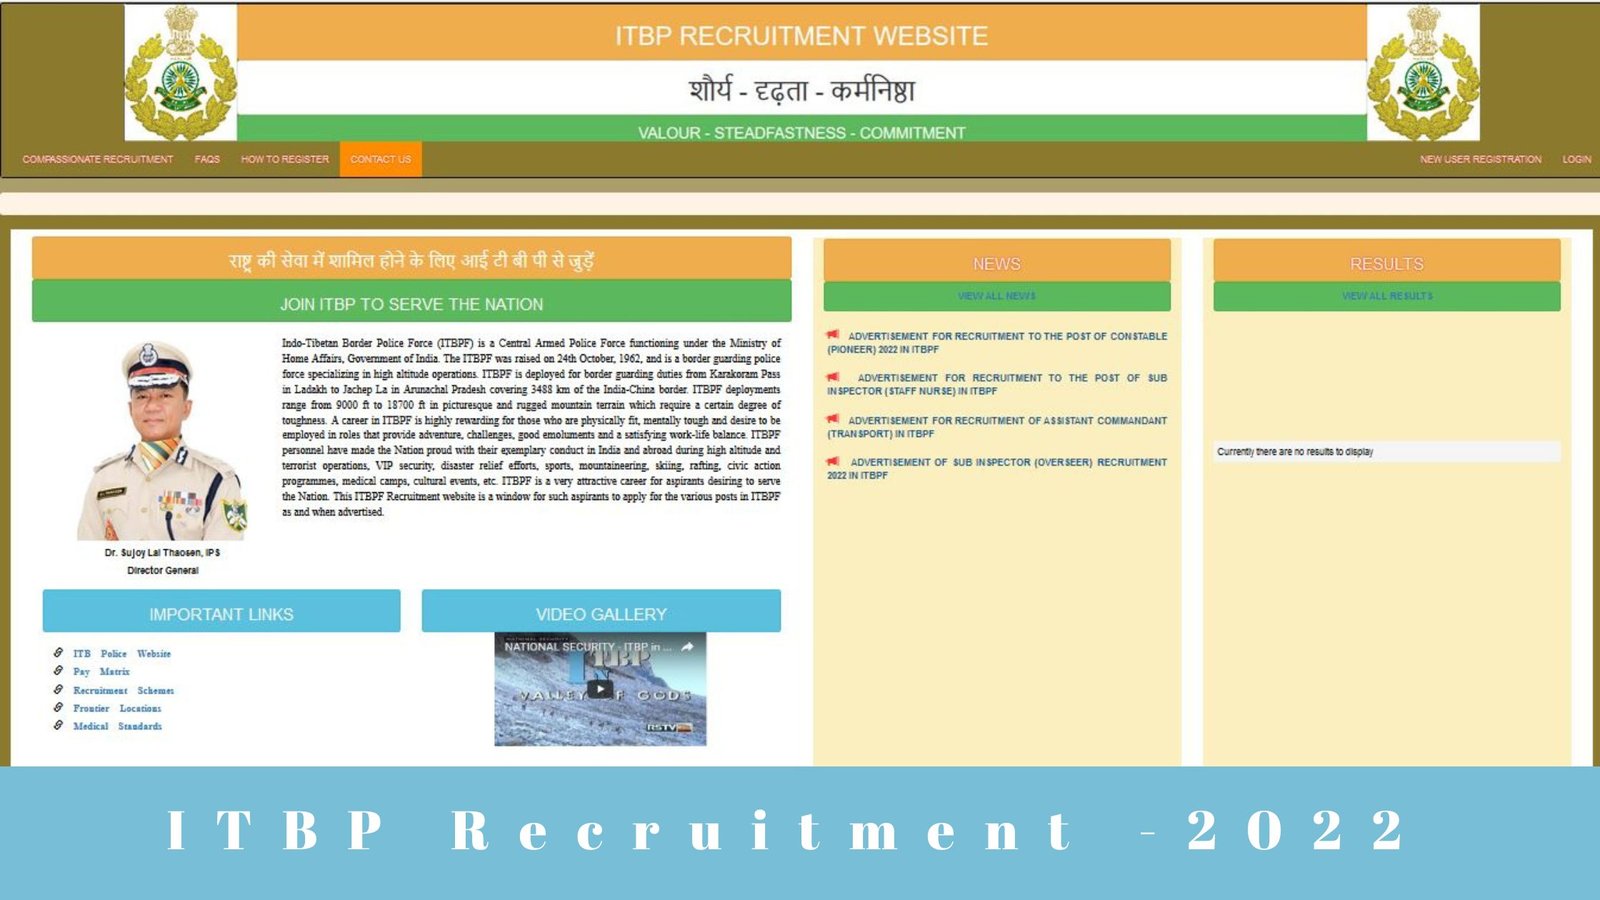 ITBP Recruitment Velaivaippu seithigal 2022 tamil